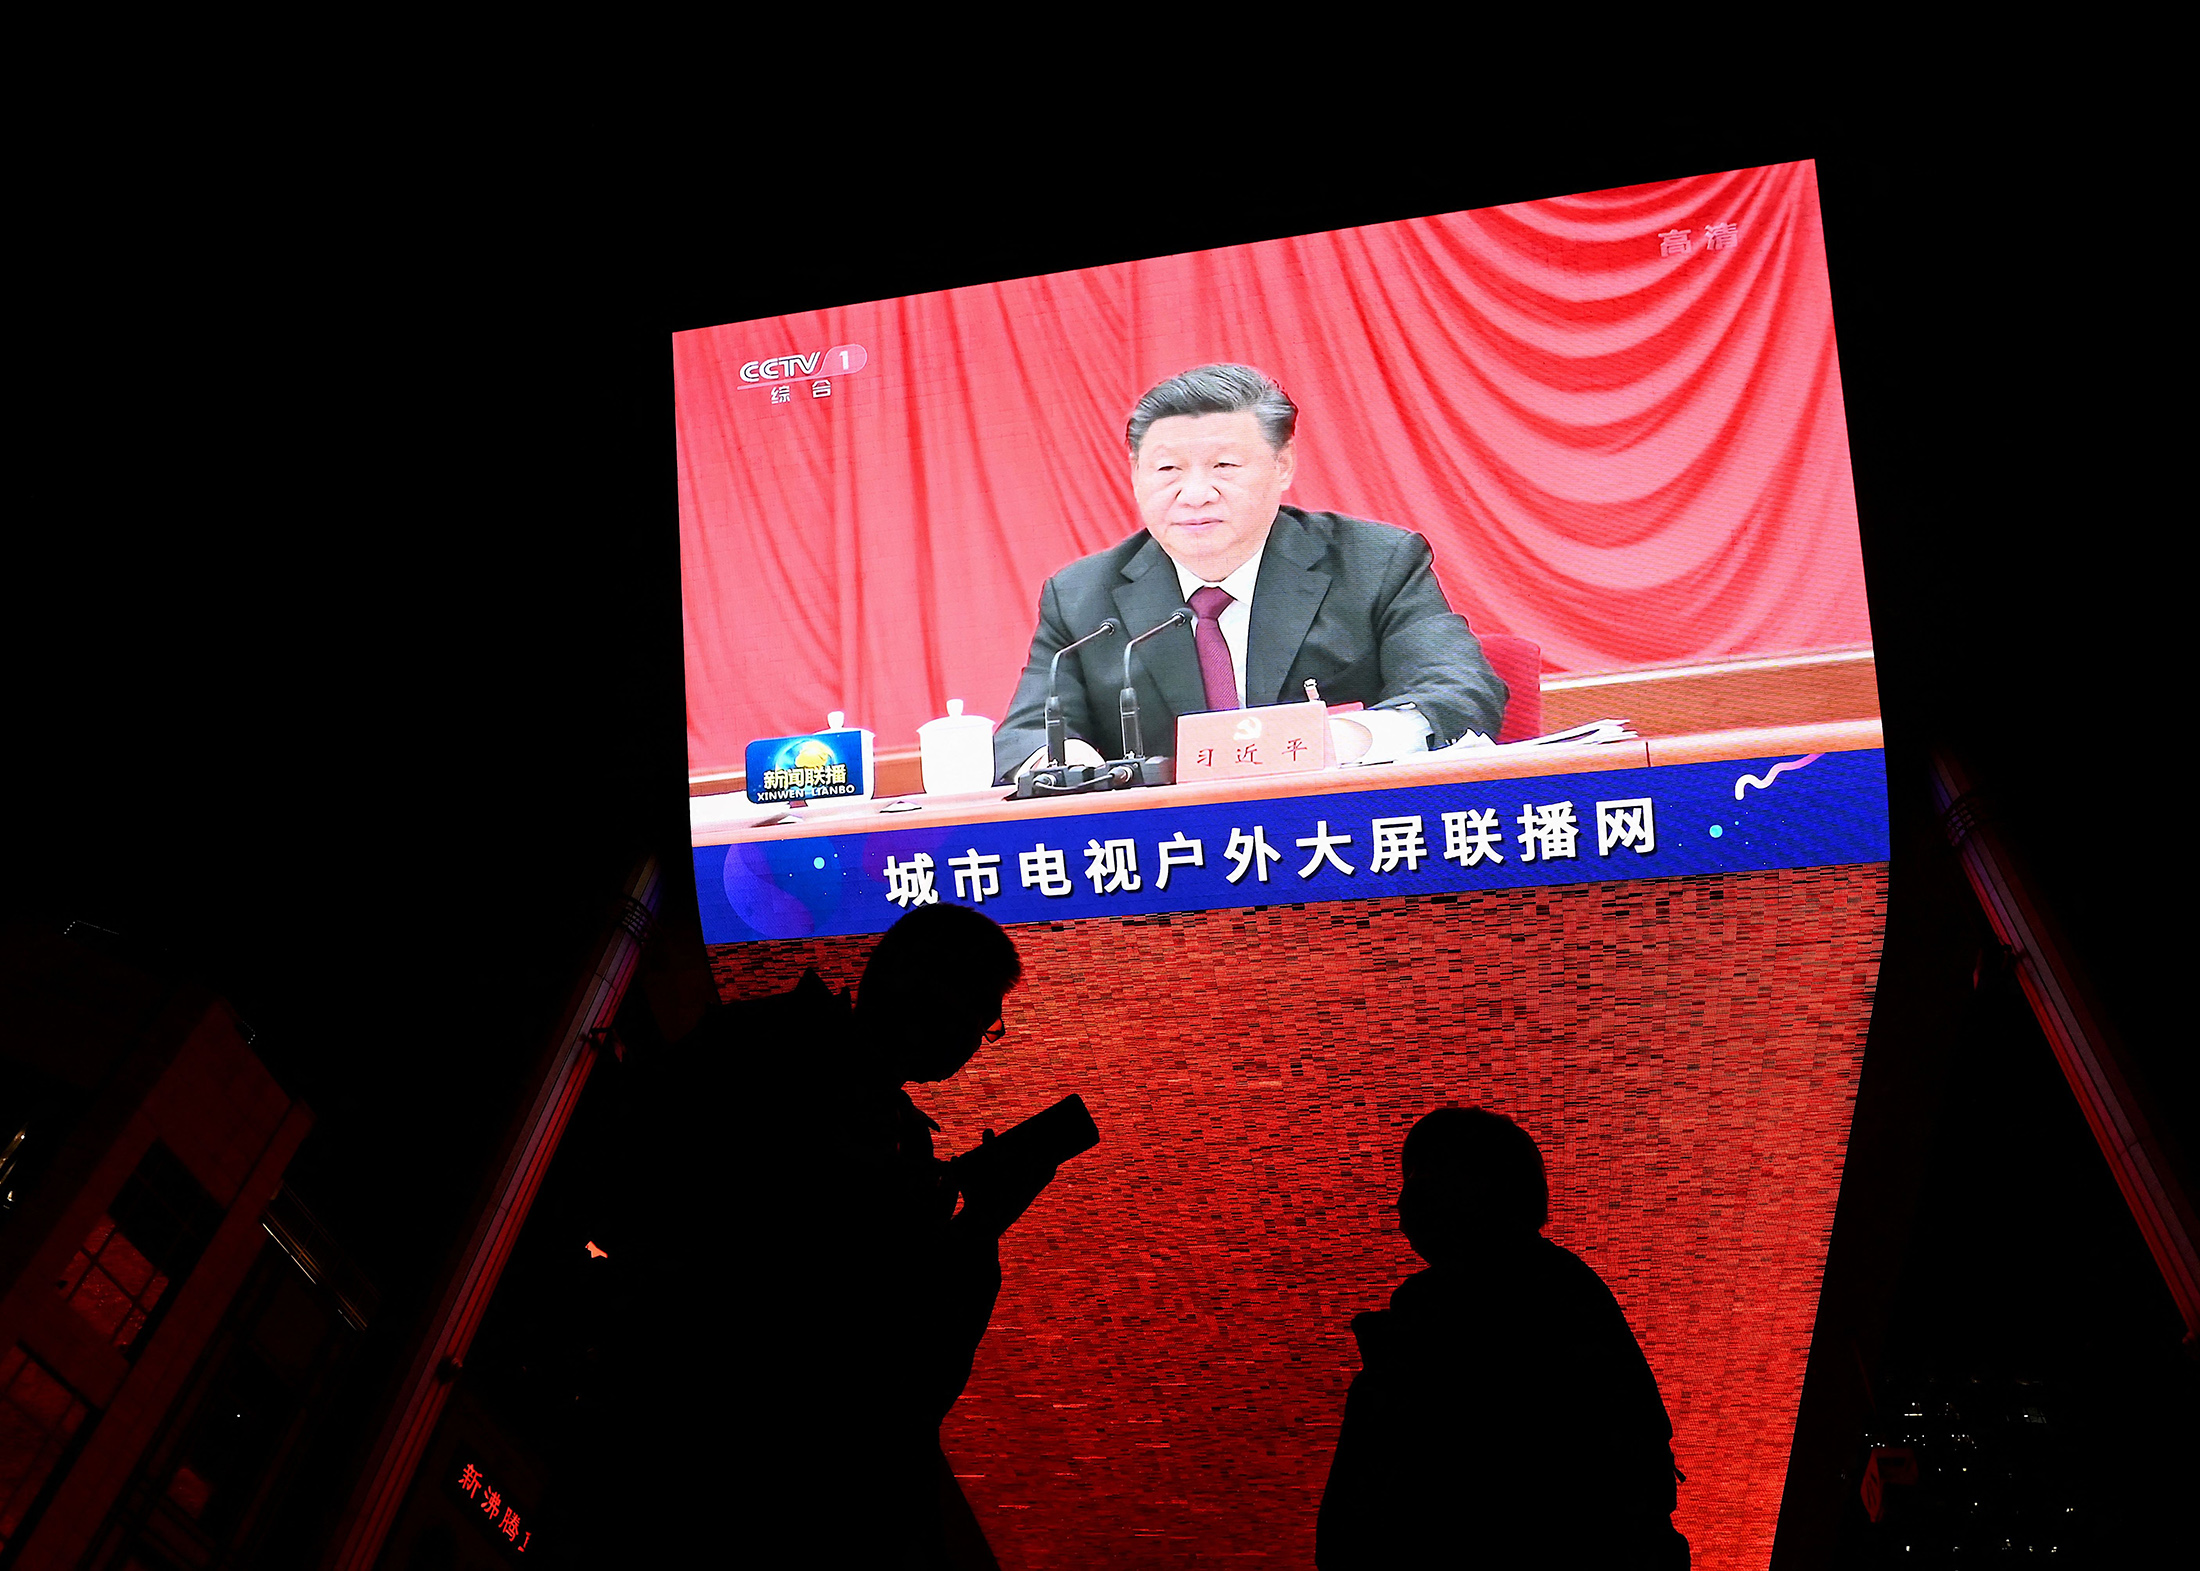 Xi Jinping on screen&nbsp;during an evening news program at a mall in Beijing.